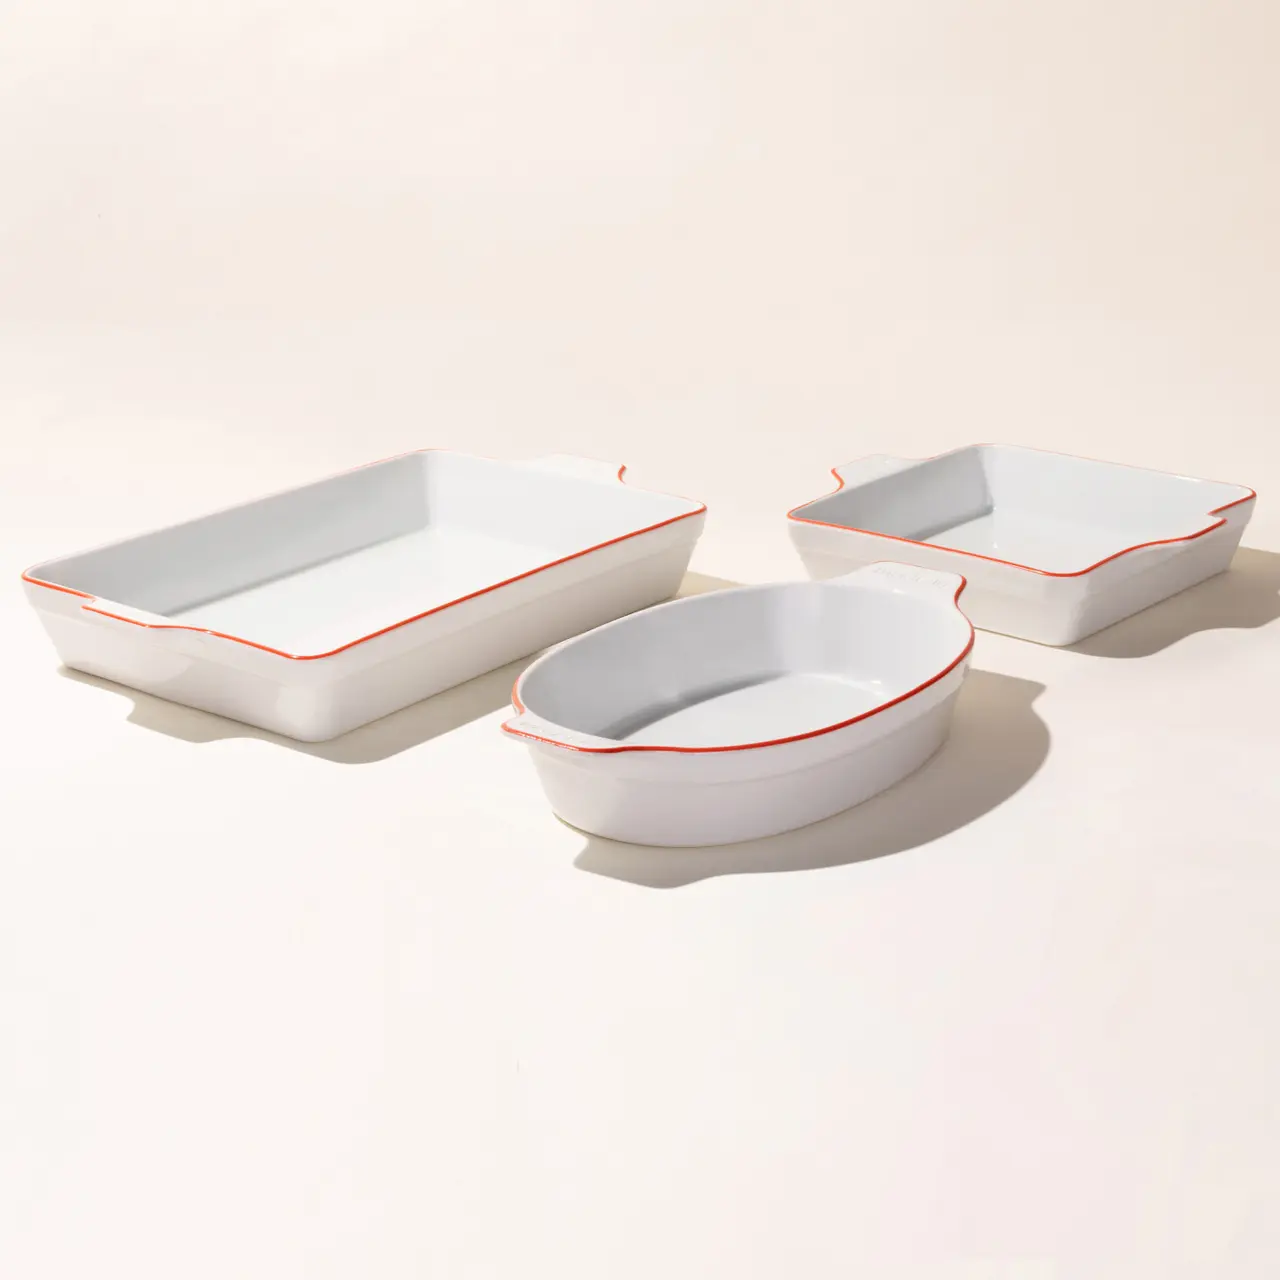 Red Rim Porcelain Bakeware Set